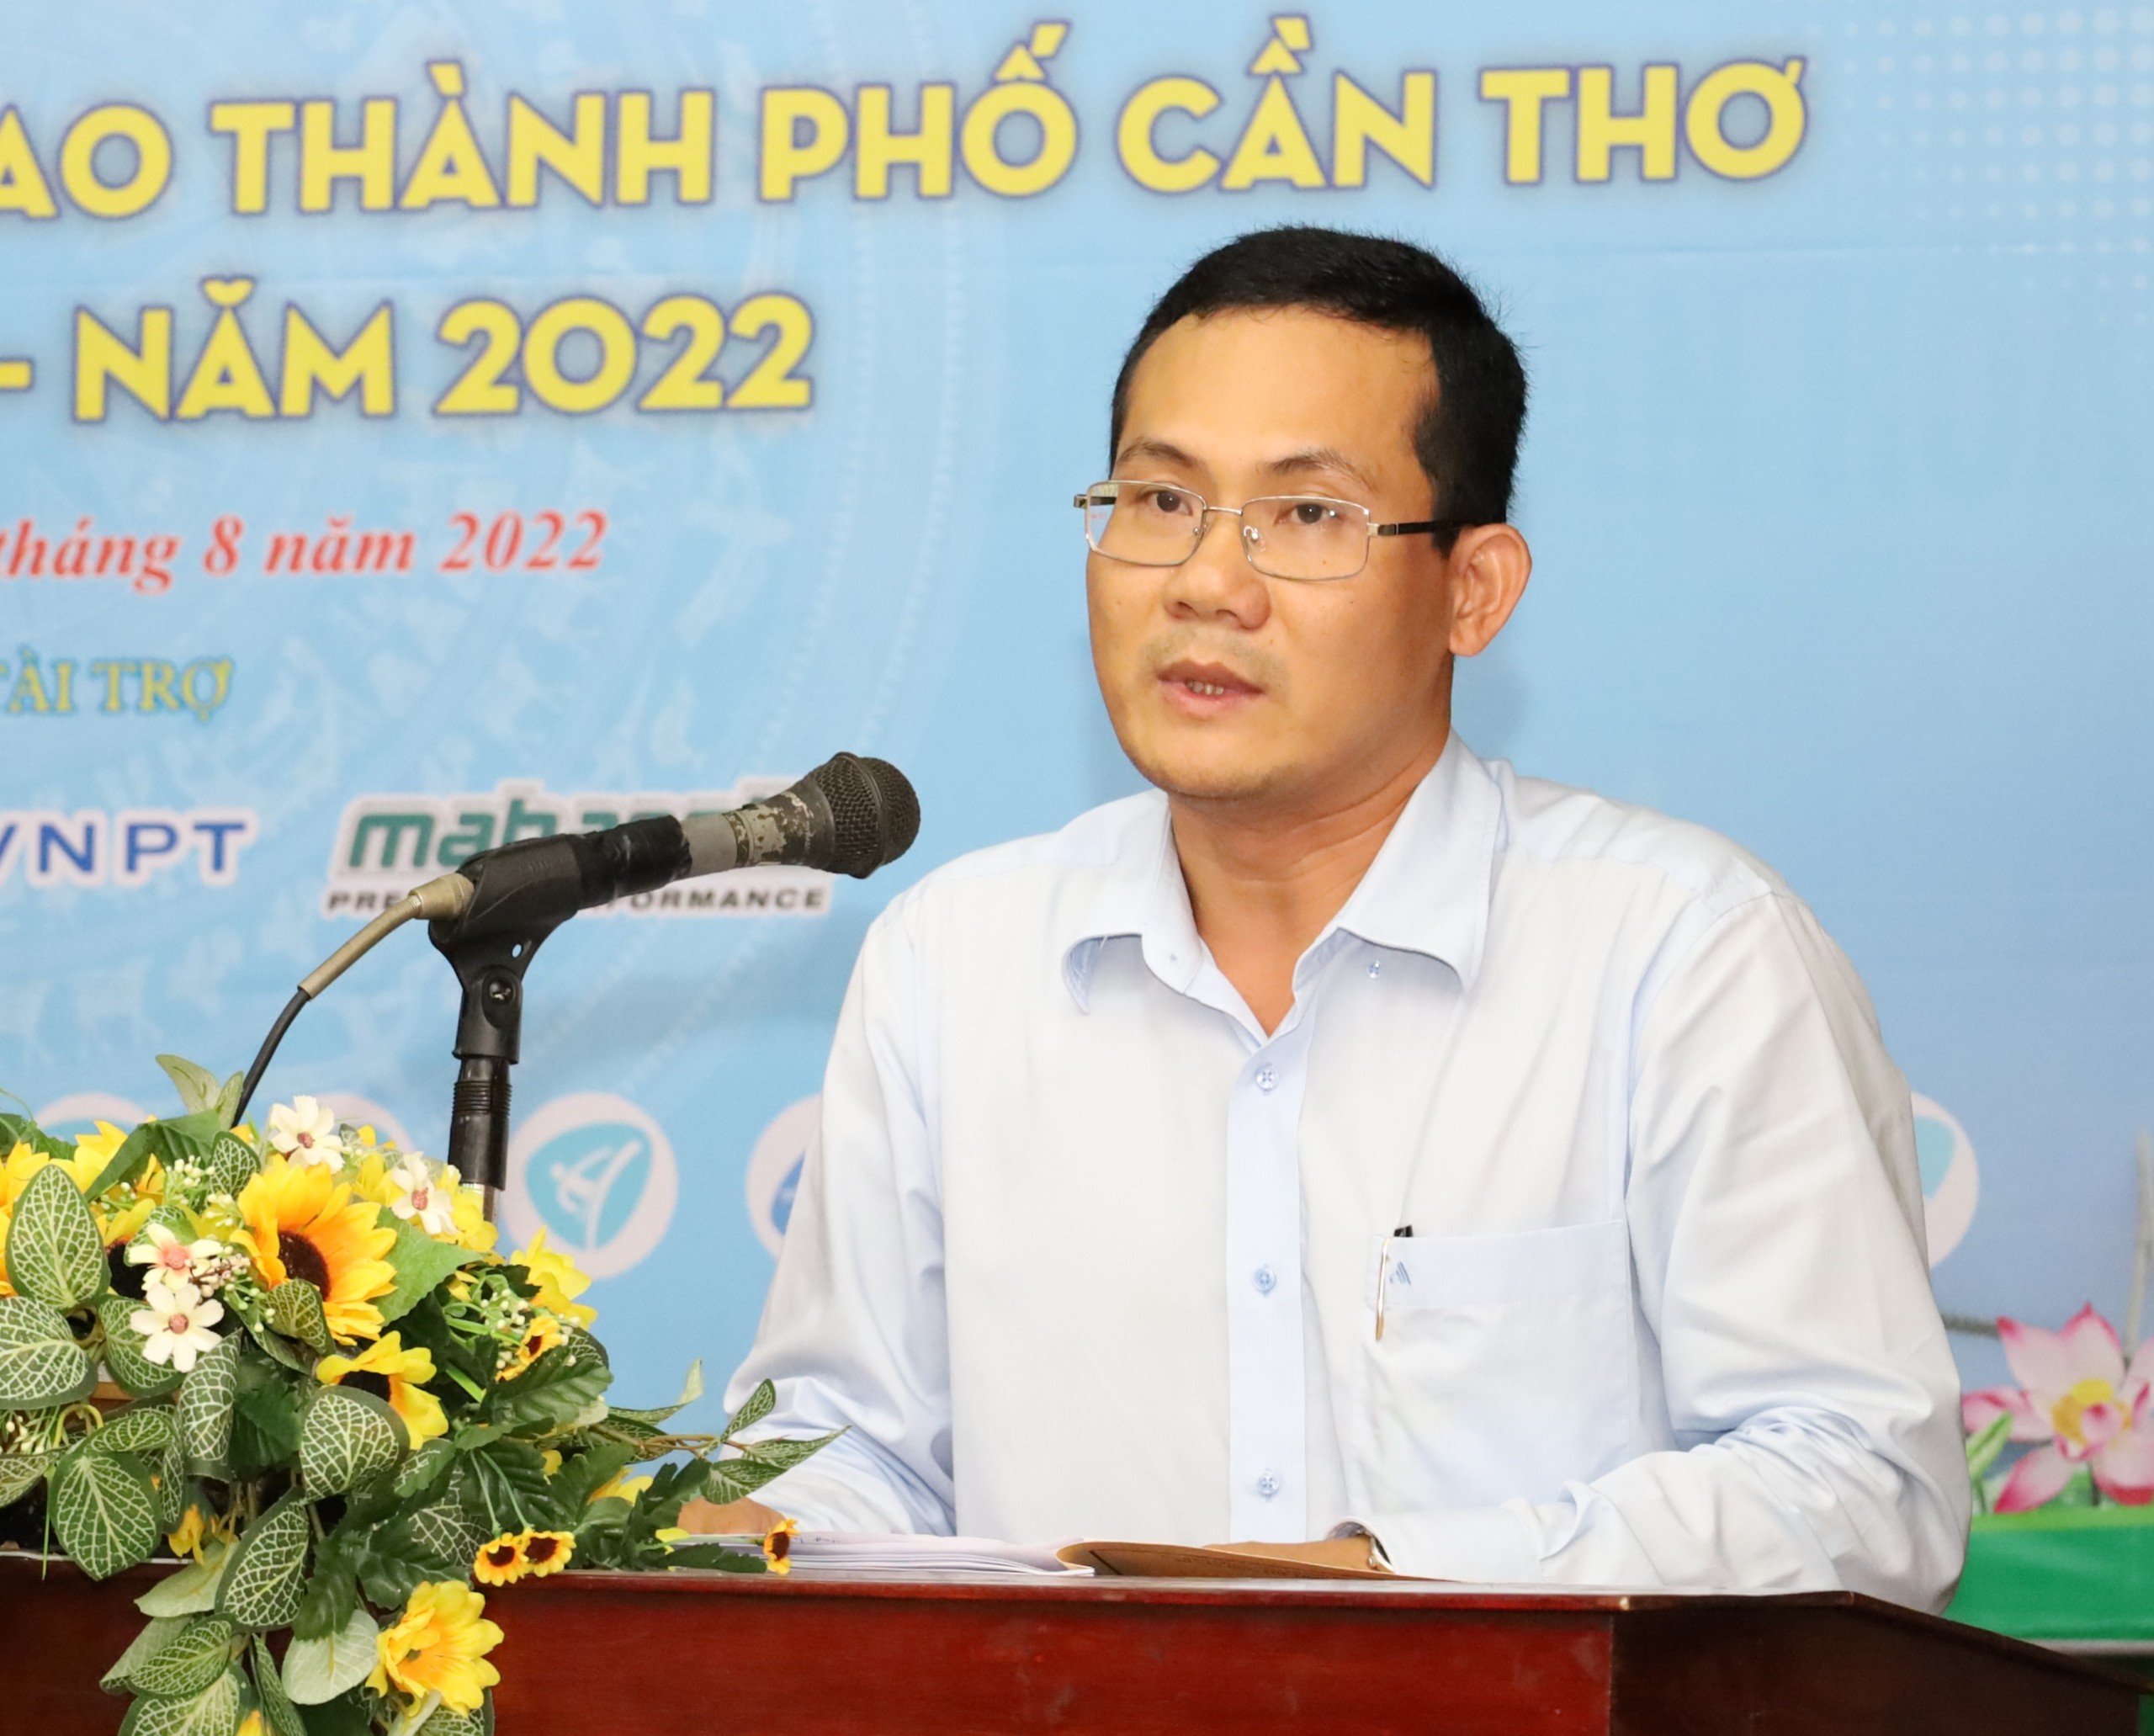 Ông Nguyễn Minh Tuấn - Giám đốc Sở Văn hóa, Thể thao và Du lịch TP. Cần Thơ phát biểu tiếp thu ý kiến đóng góp tại buổi tổng kết.